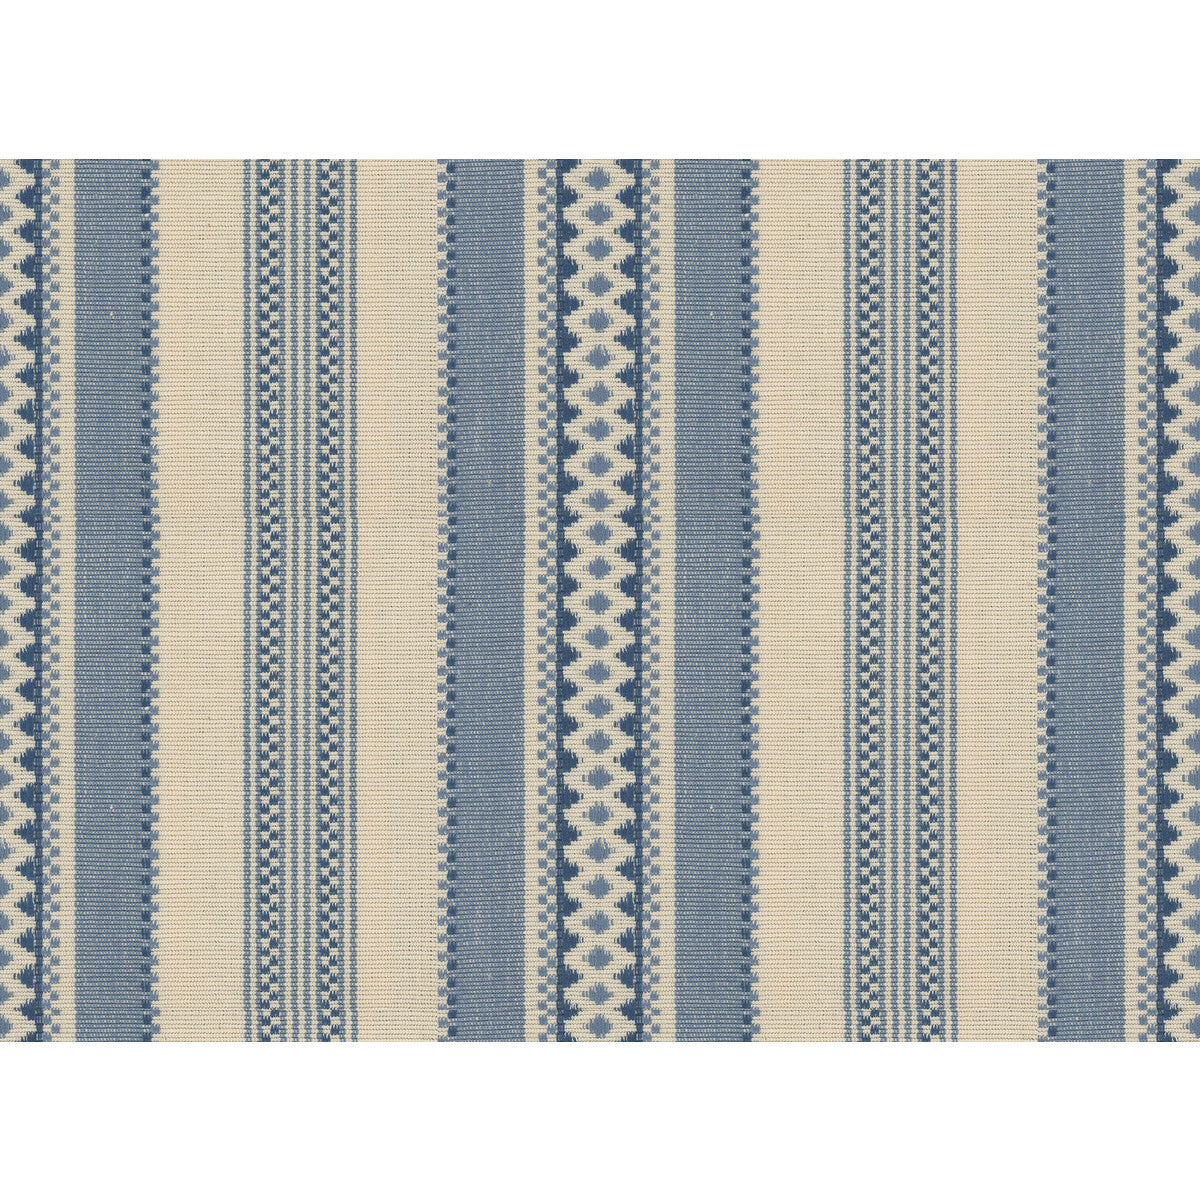 Kravet Basics fabric in 28919-1615 color - pattern 28919.1615.0 - by Kravet Basics